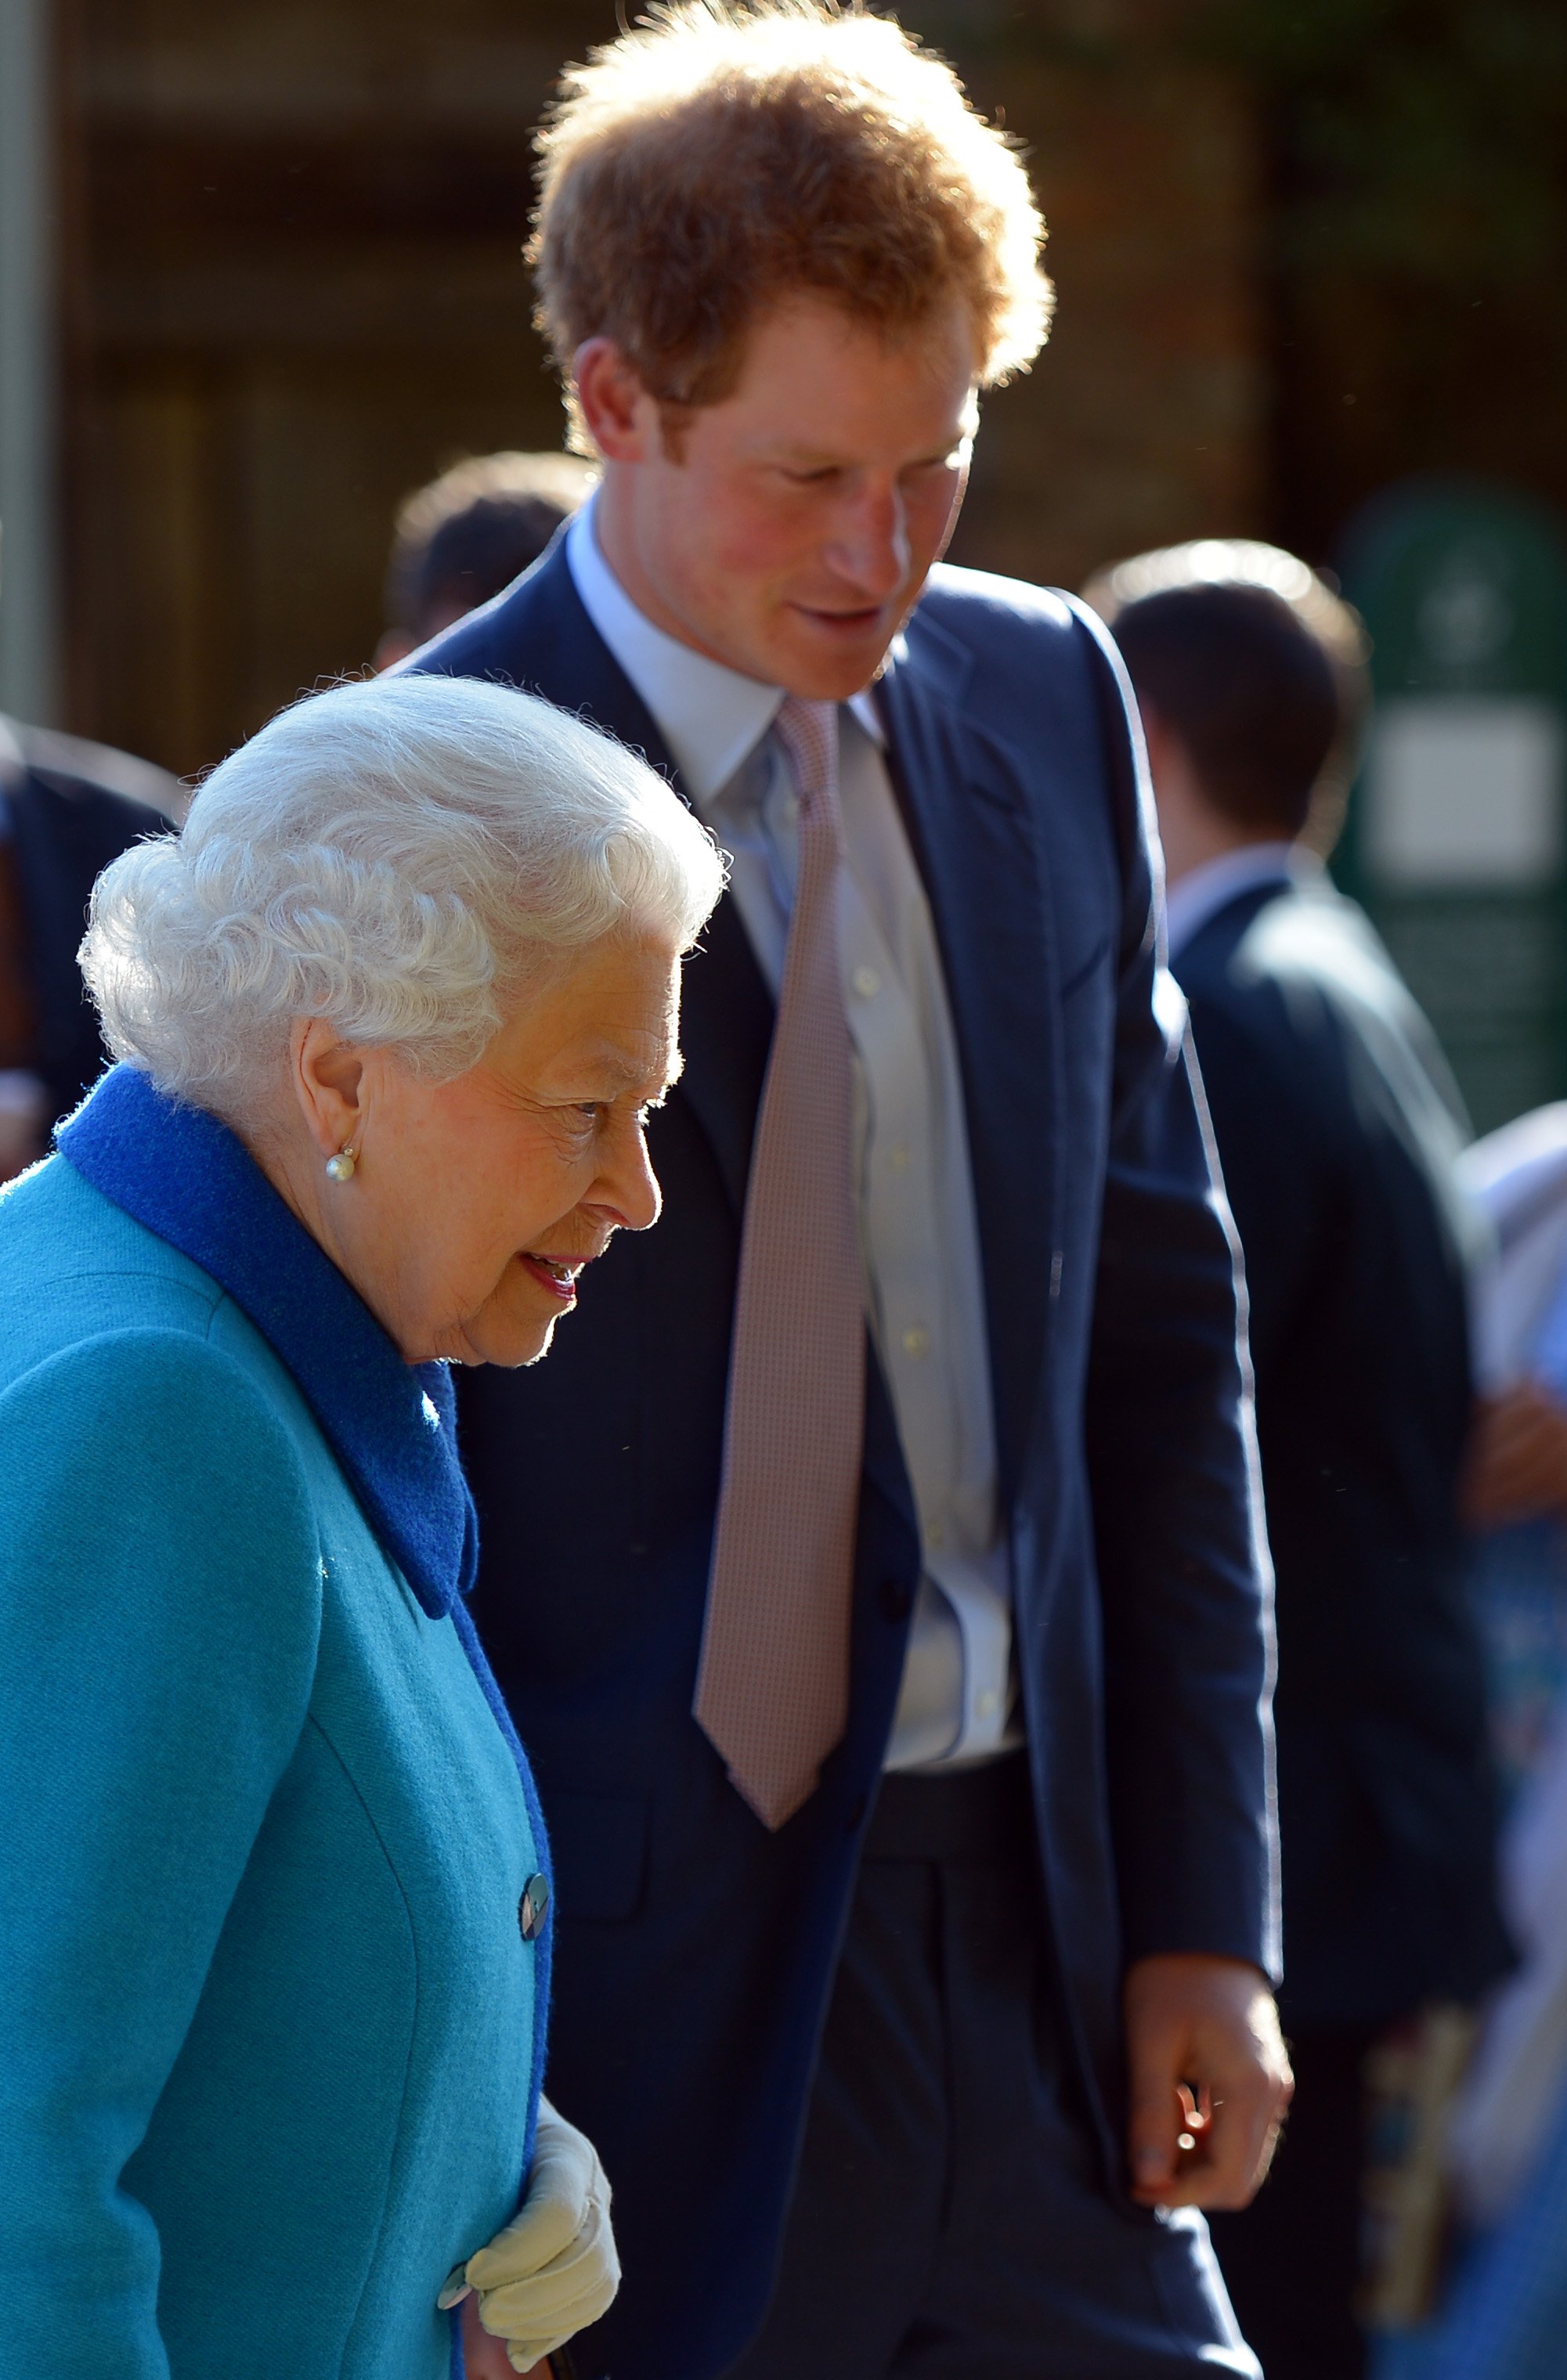 La reina Elizabeth II y el príncipe Harry en el Chelsea Flower Show anual en el Royal Hospital Chelsea, el 18 de mayo de 2015 en Londres, Inglaterra. | Foto: Getty Images